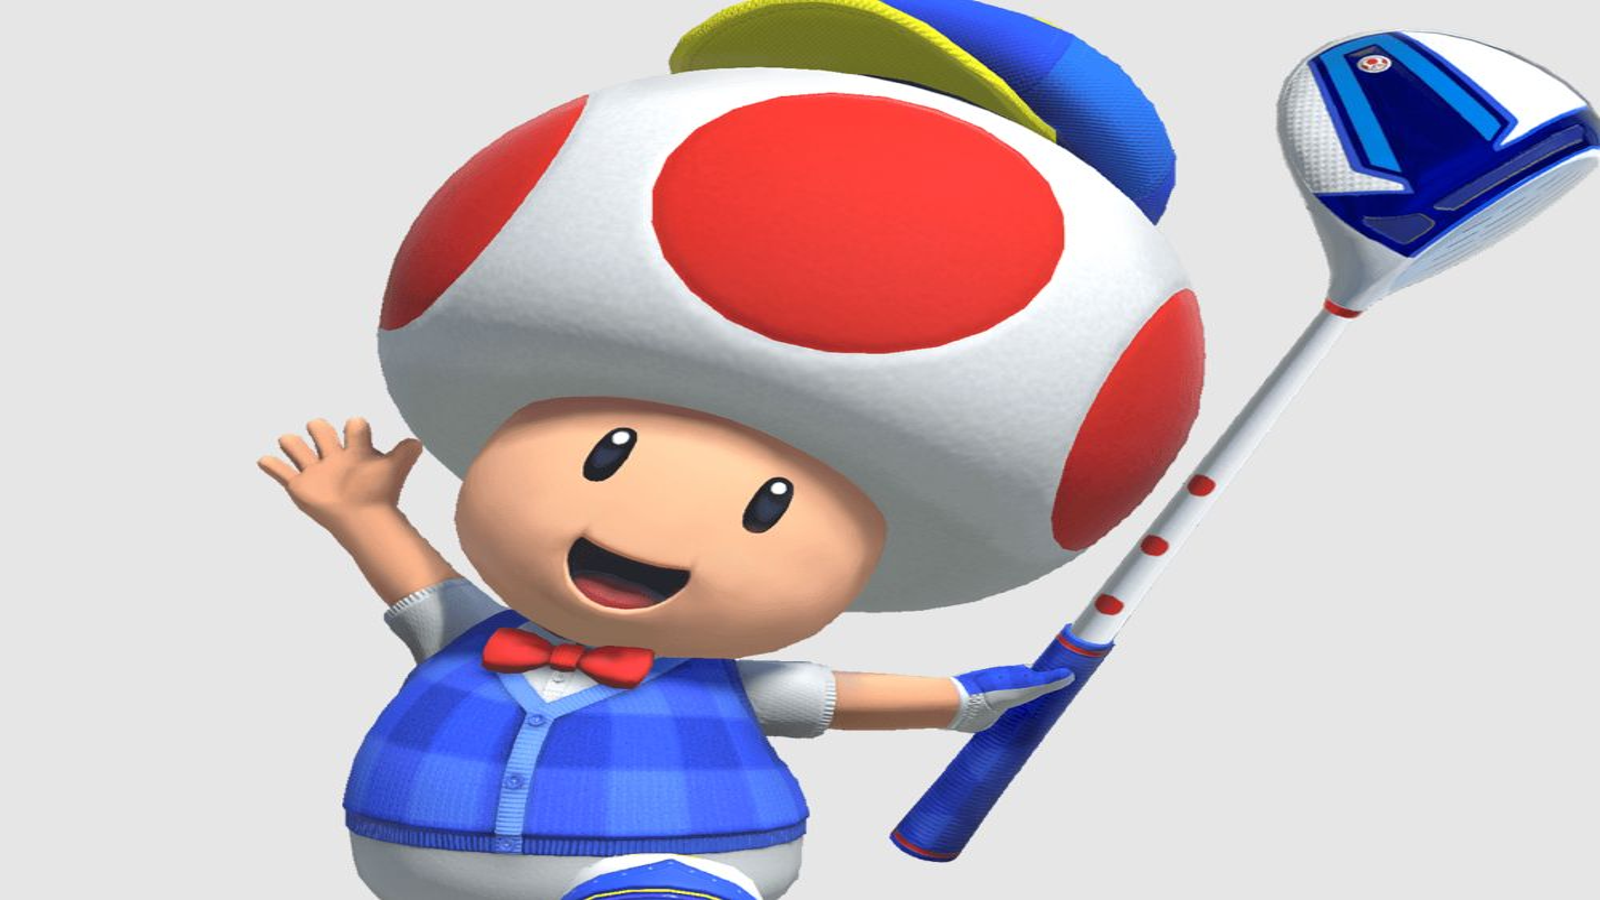 Mario Golf: Super Rush Guide - IGN